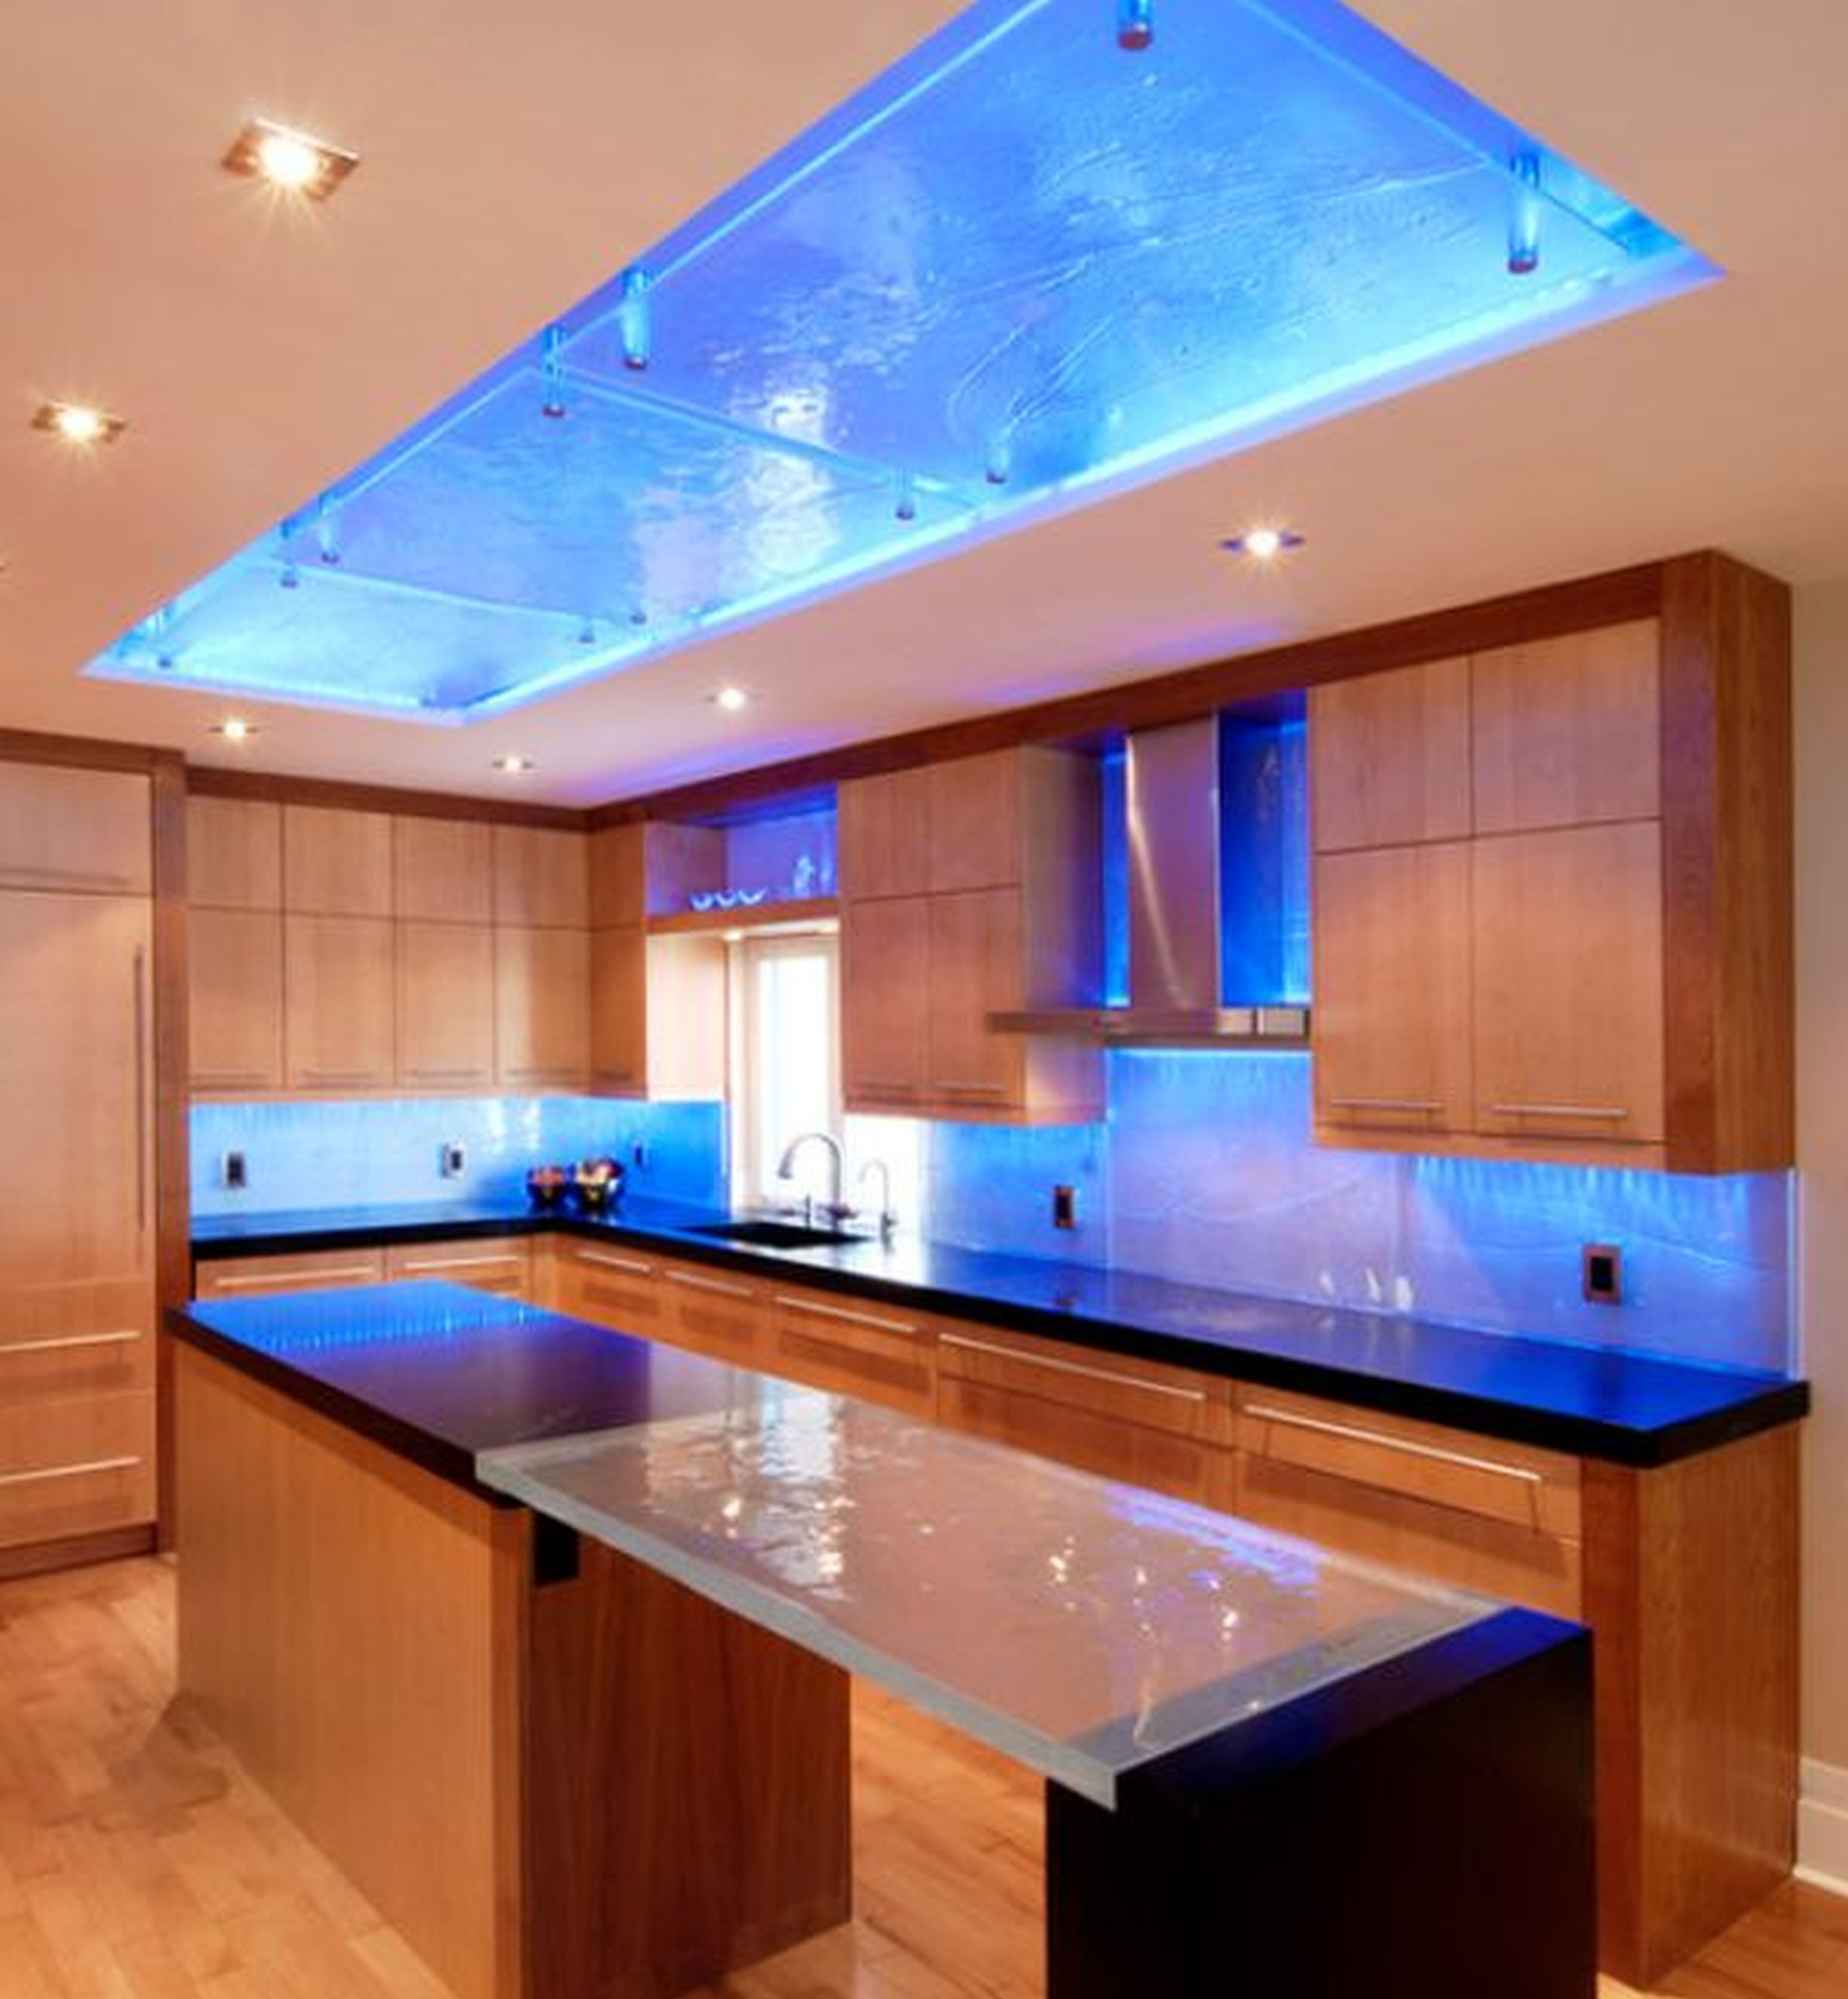 Подсветка внутри потолка. Освещение на кухне. Кухонный гарнитур с подсветкой. Светодиодная подсветка для кухни. Потолок с подсветкой.